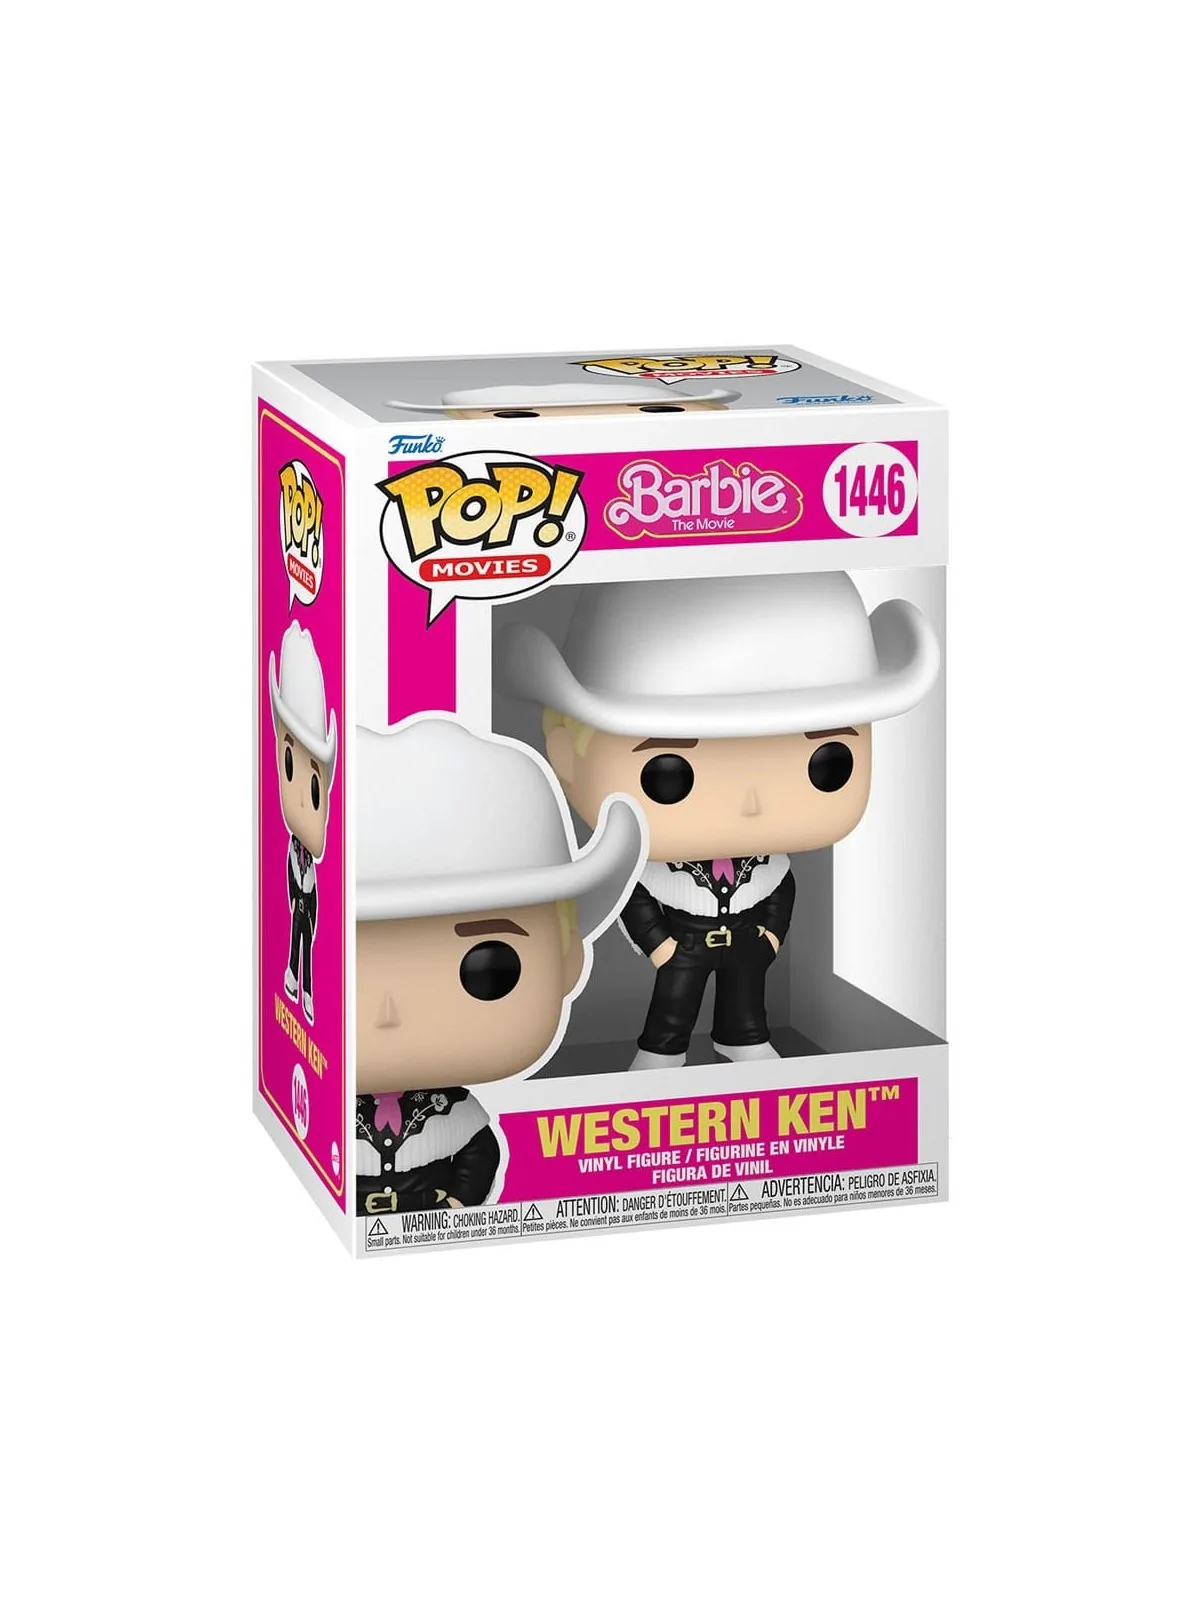 Comprar Funko POP! Barbie Western: Ken (1446) barato al mejor precio 1